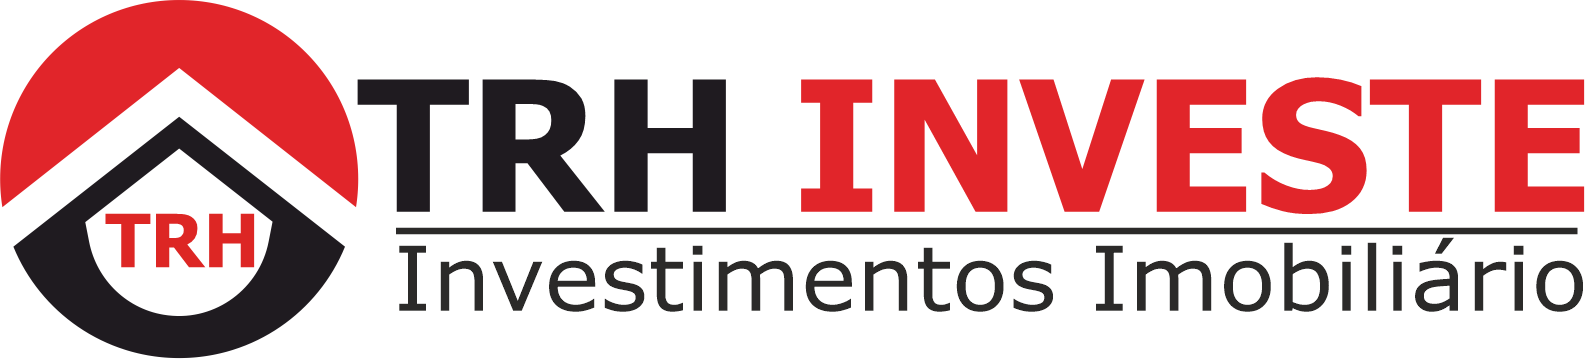 TRH Investe - Guia Imobiliário